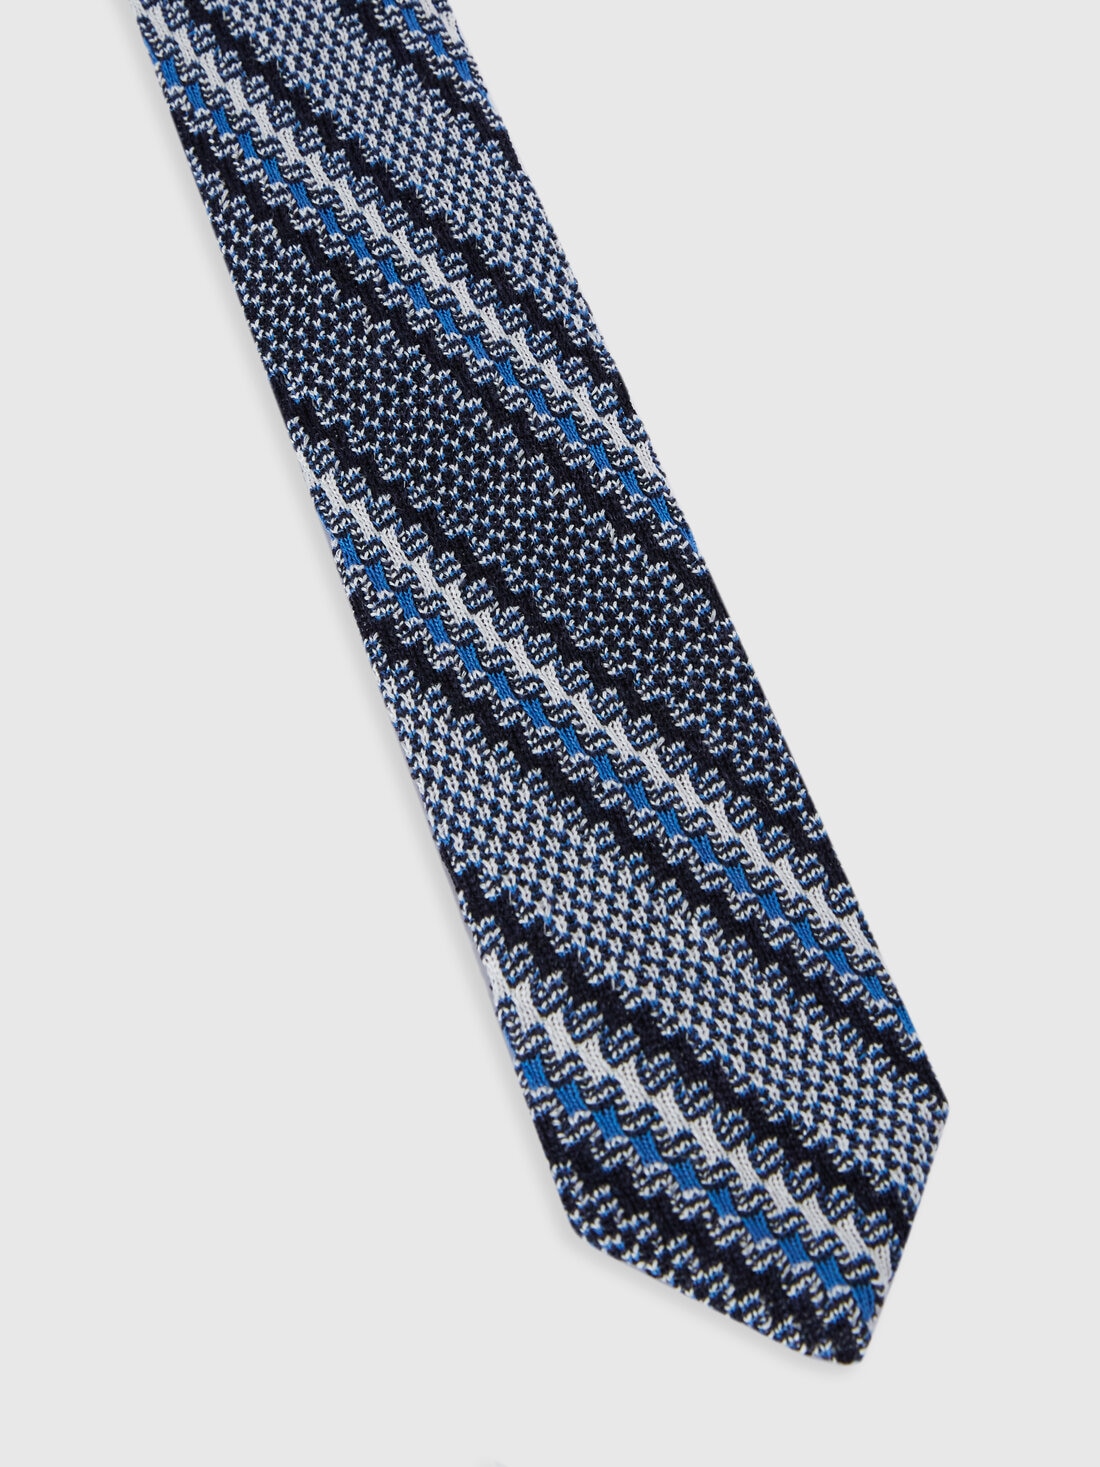 Cravatta in cotone e lino con ricami, Multicolore  - 8053147141879 - 1